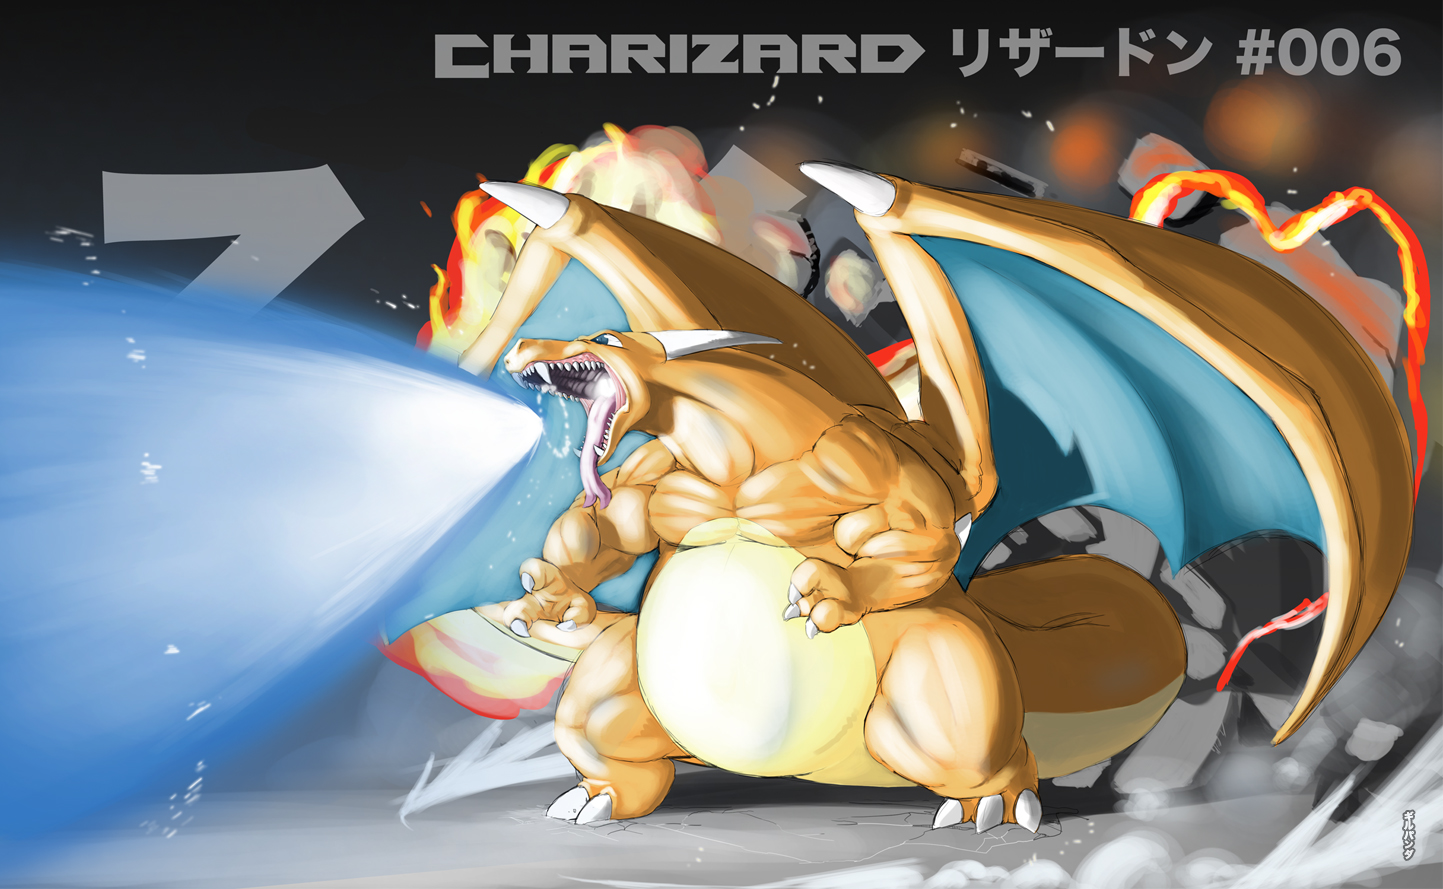 Charizard | 151 pokemon, Pokemon charizard, Pokemon charmander